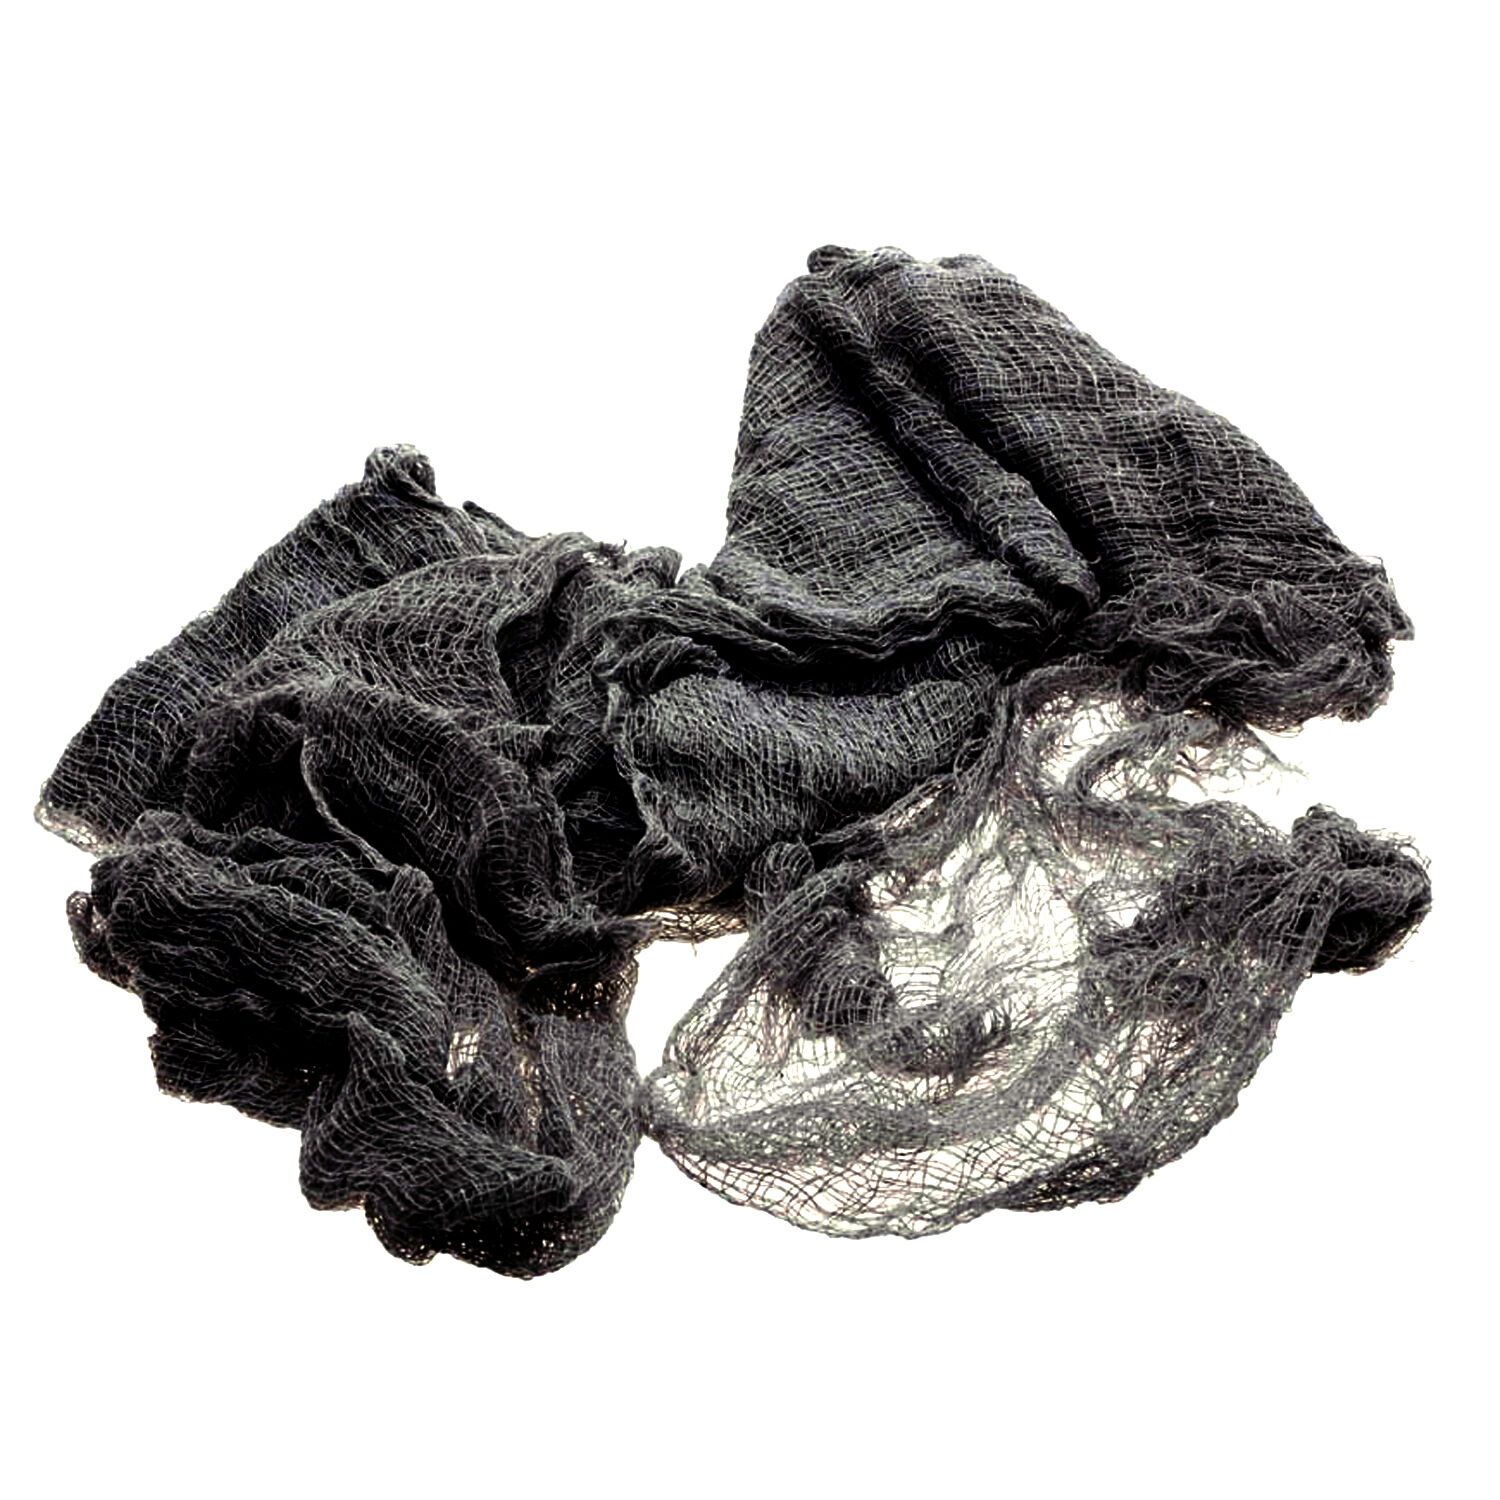 NEU Gruseliger Lumpengewebe Fetzenstoff für tolle Halloween-Deko & Co., Antrazith, Größe ca. 76 cm x 183 cm